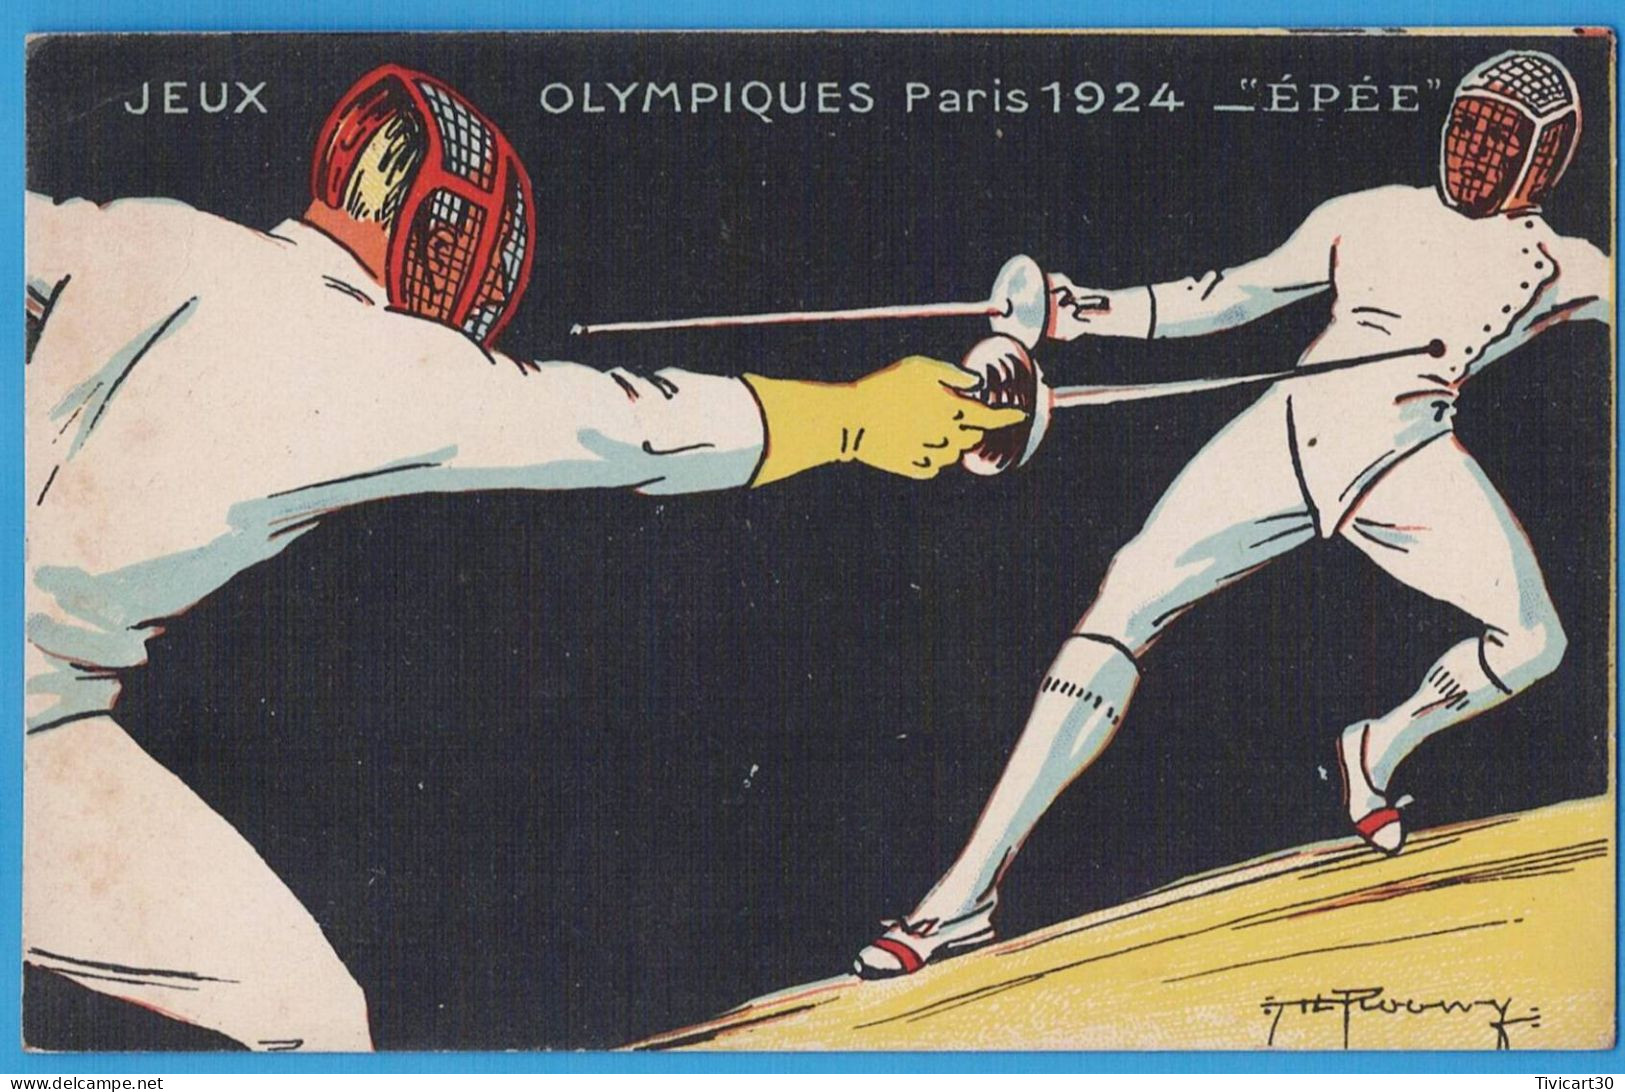 CPA JEUX OLYMPIQUES PARIS 1924 - EPEE - ILLUSTRATEUR ROOWEY - COLLECTION KOLARSINE ET SOLUTION PAUTAUBERGE - Jeux Olympiques